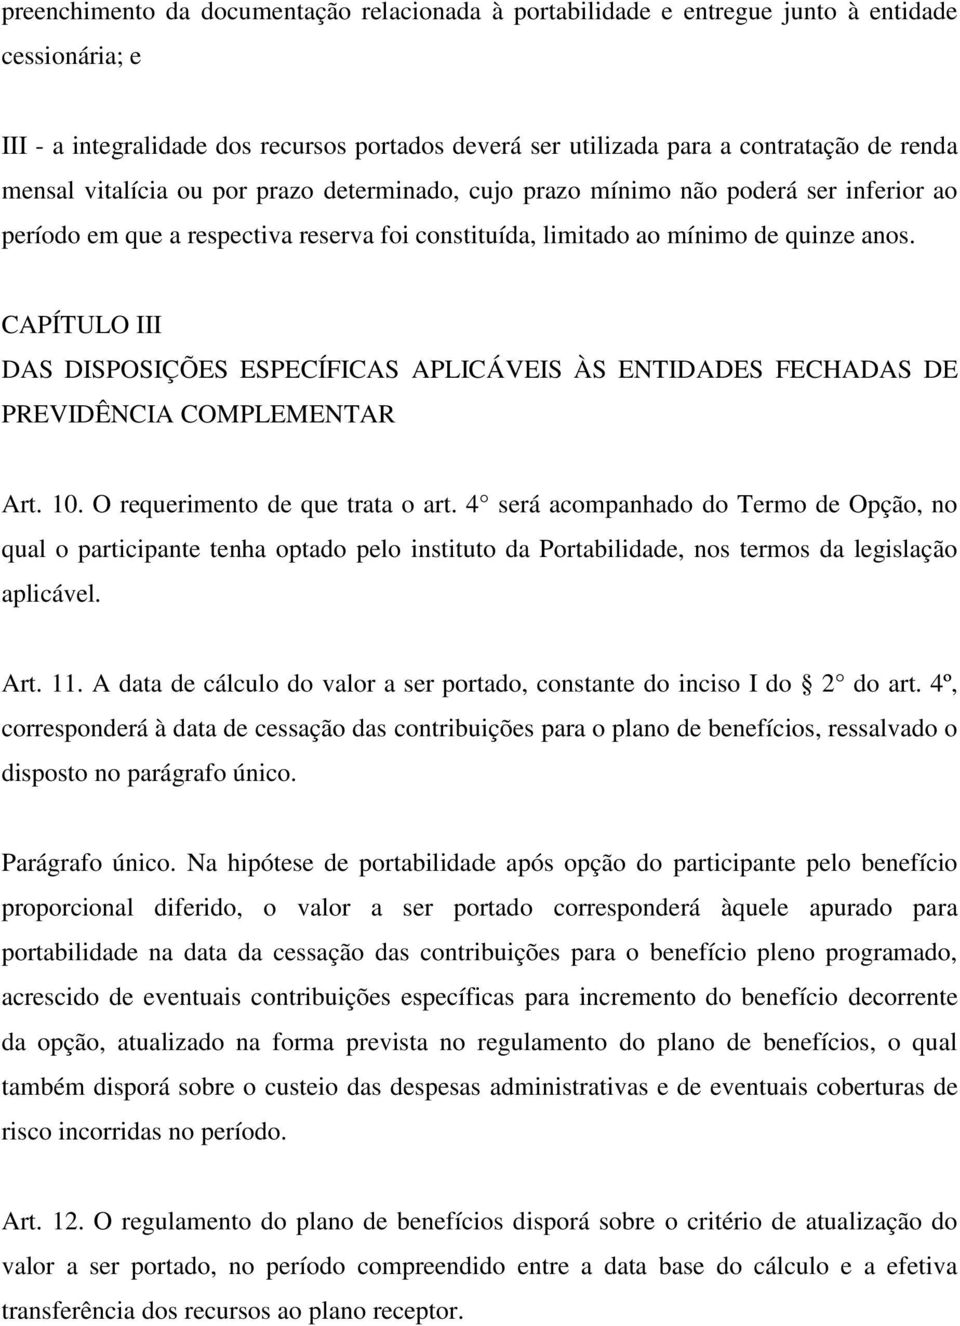 CAPÍTULO III DAS DISPOSIÇÕES ESPECÍFICAS APLICÁVEIS ÀS ENTIDADES FECHADAS DE PREVIDÊNCIA COMPLEMENTAR Art. 10. O requerimento de que trata o art.